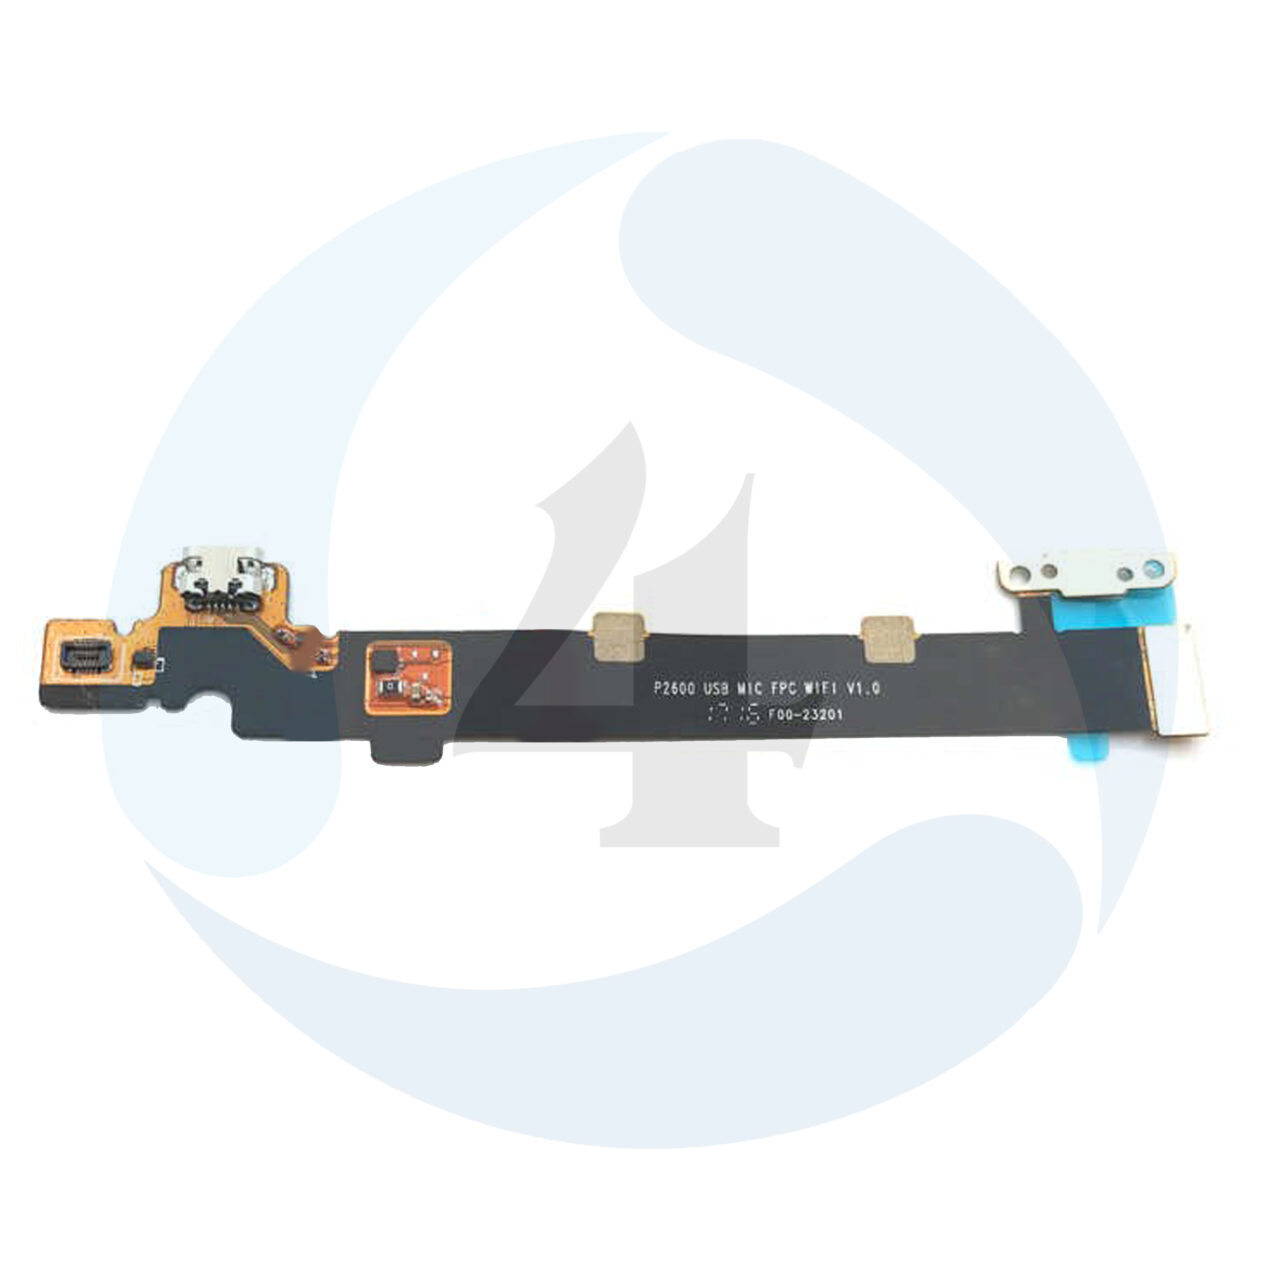 Nieuwe Dock Connector Oplader Voor Huawei Media Pad M3 Lite M3lite 10 1 inch BAH W09 Usb jpg q50 Wifi Version